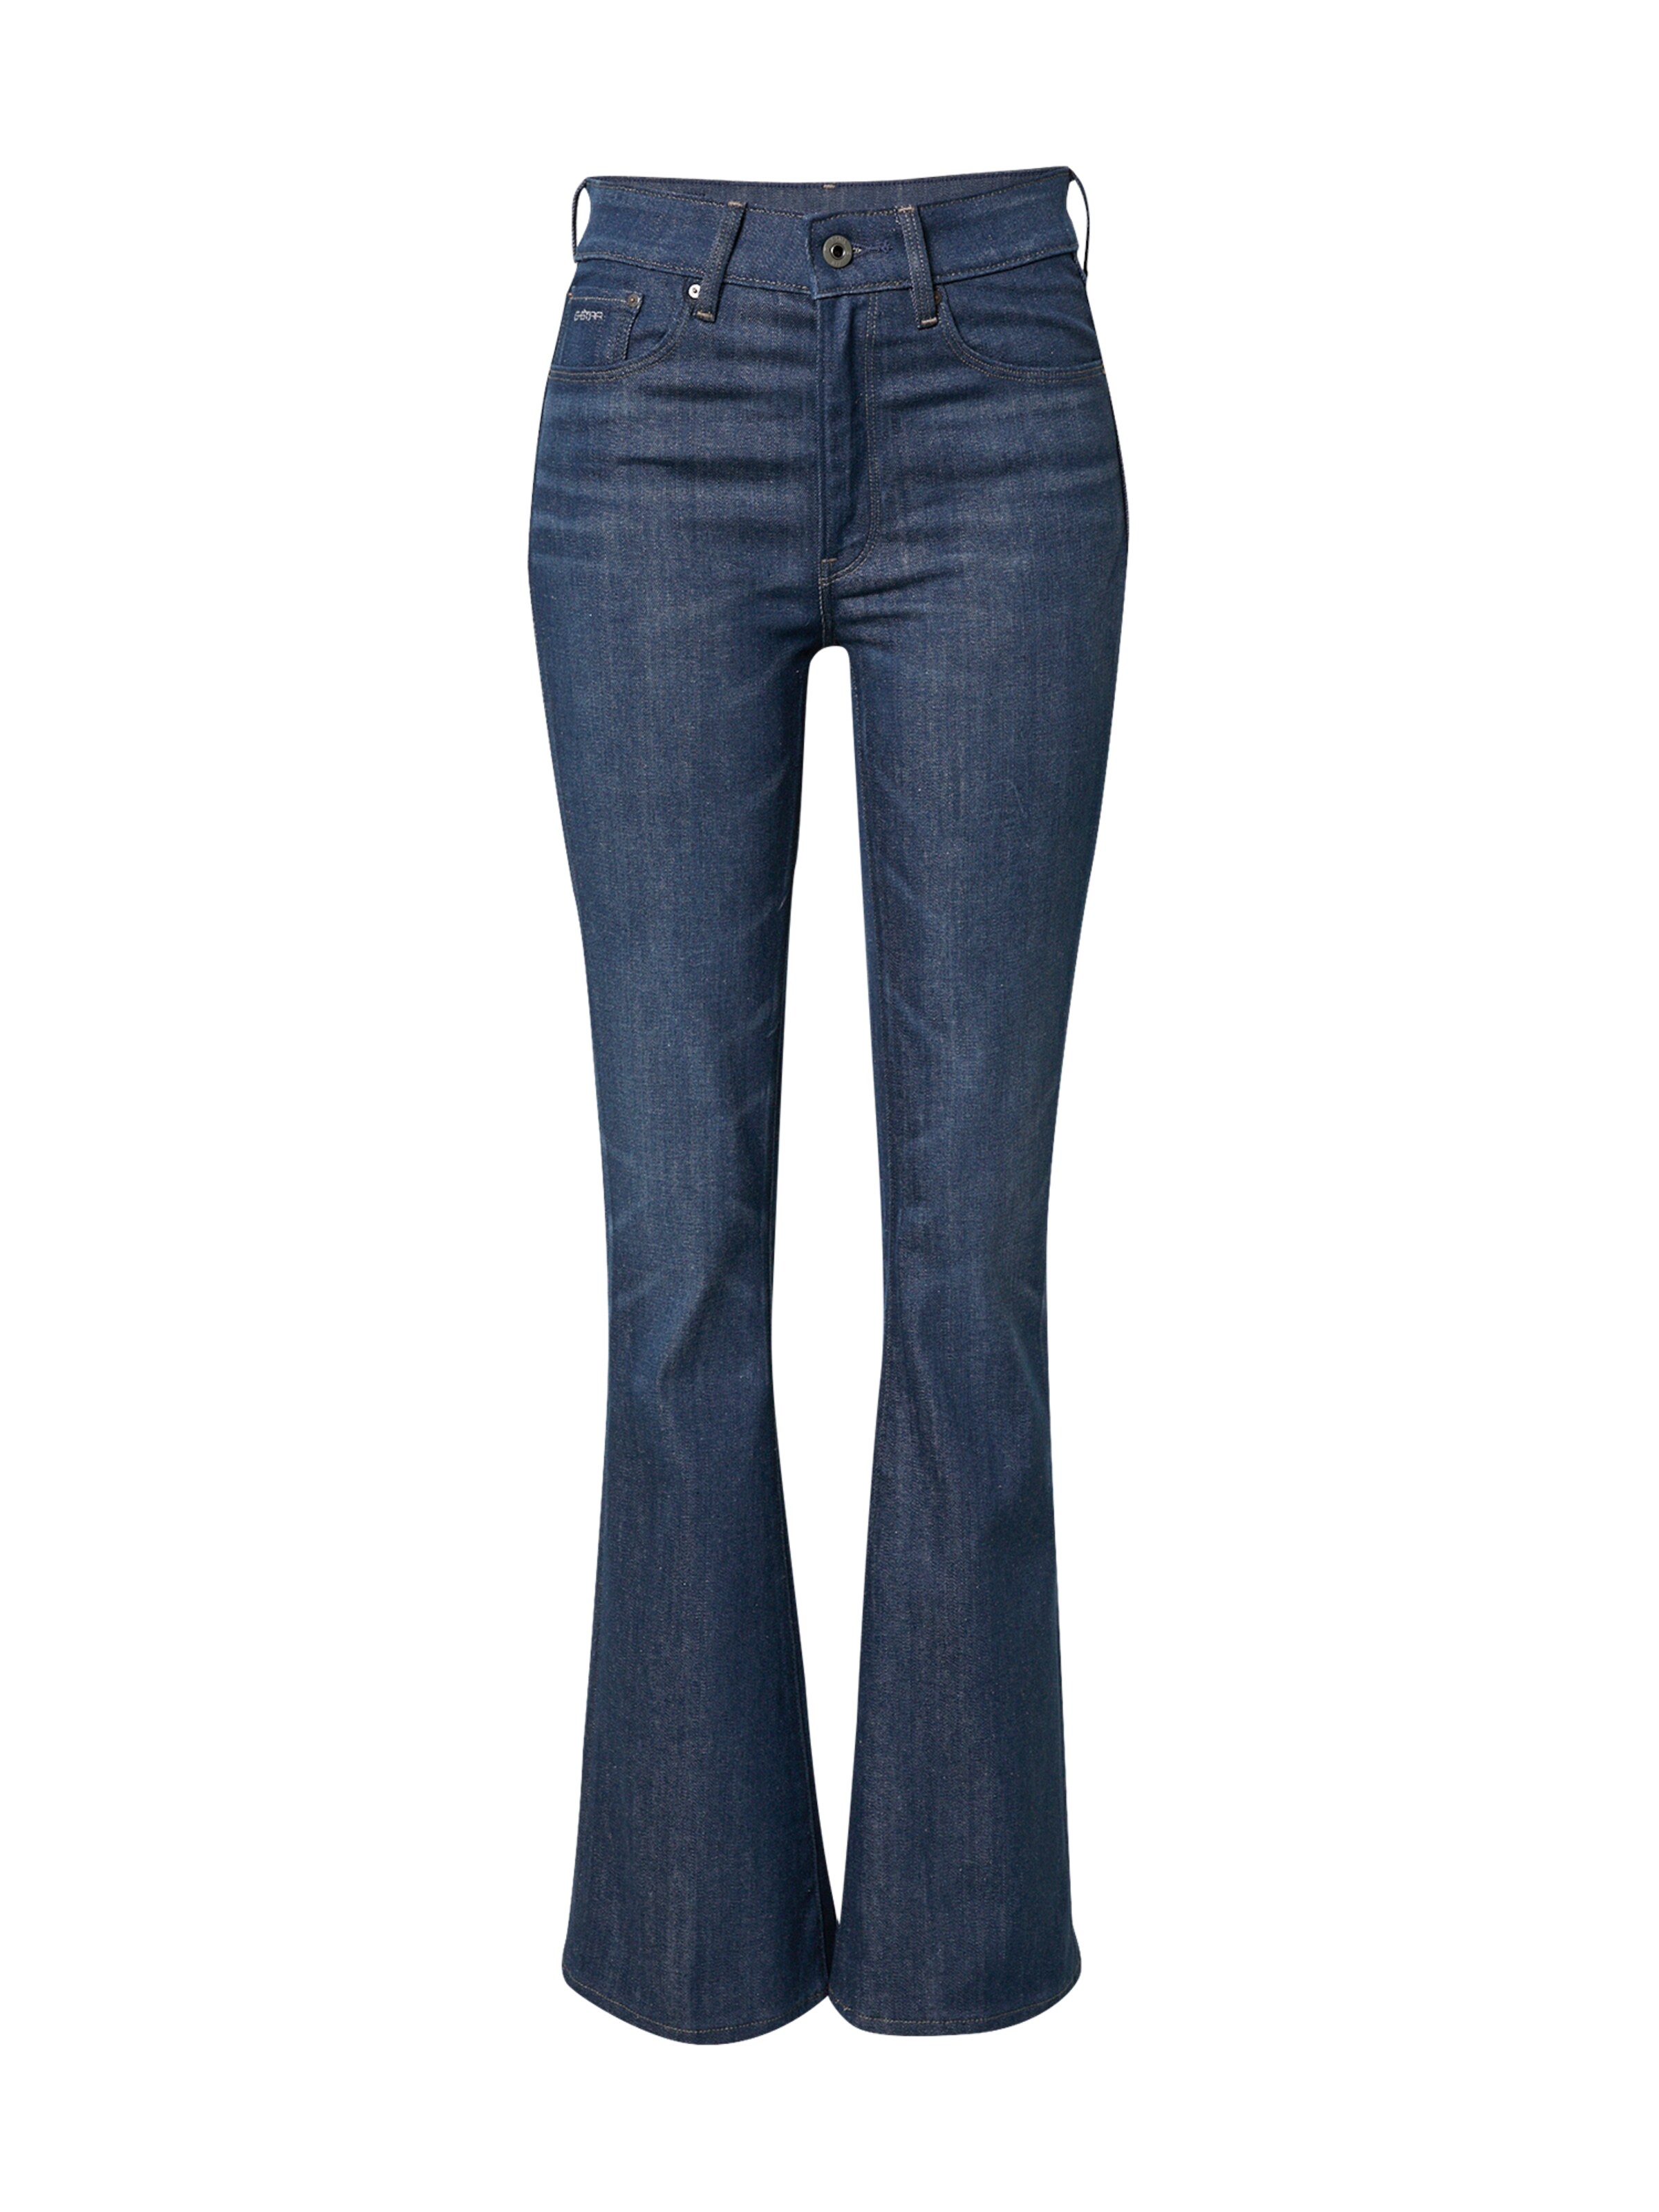 Abbigliamento G4tfk G-Star RAW Jeans in Blu Scuro 